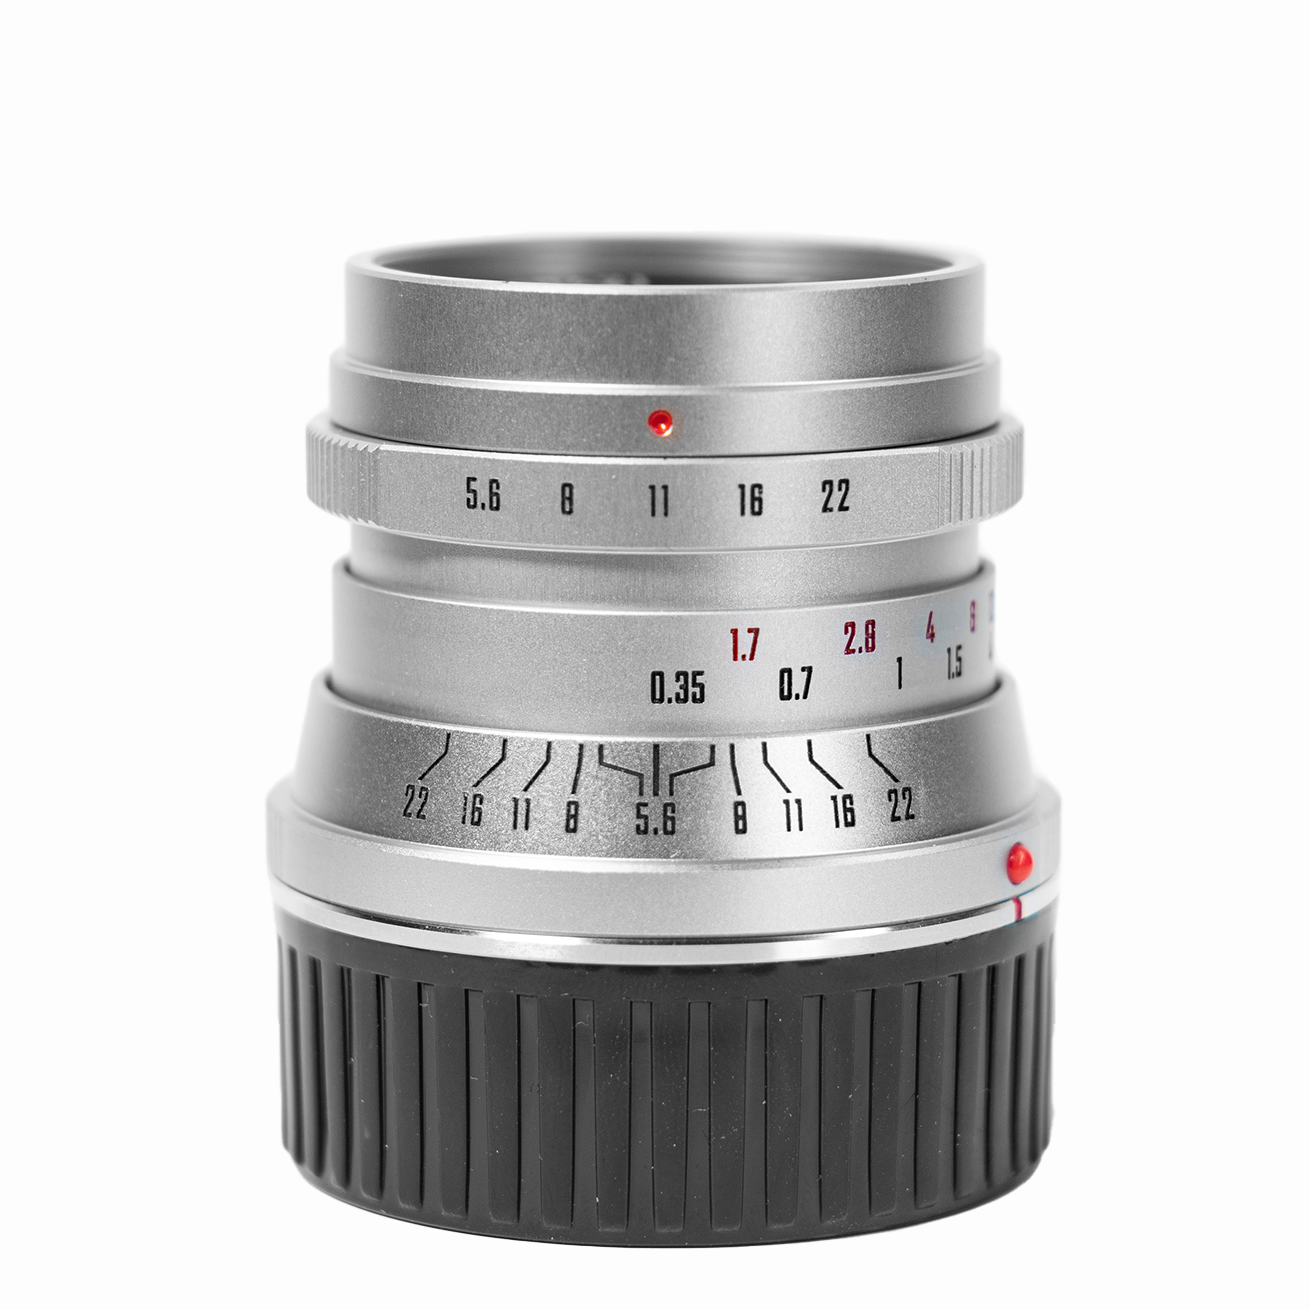 Mitakon Zhongyi Creator 28mm f/5.6 Lens for Canon RF